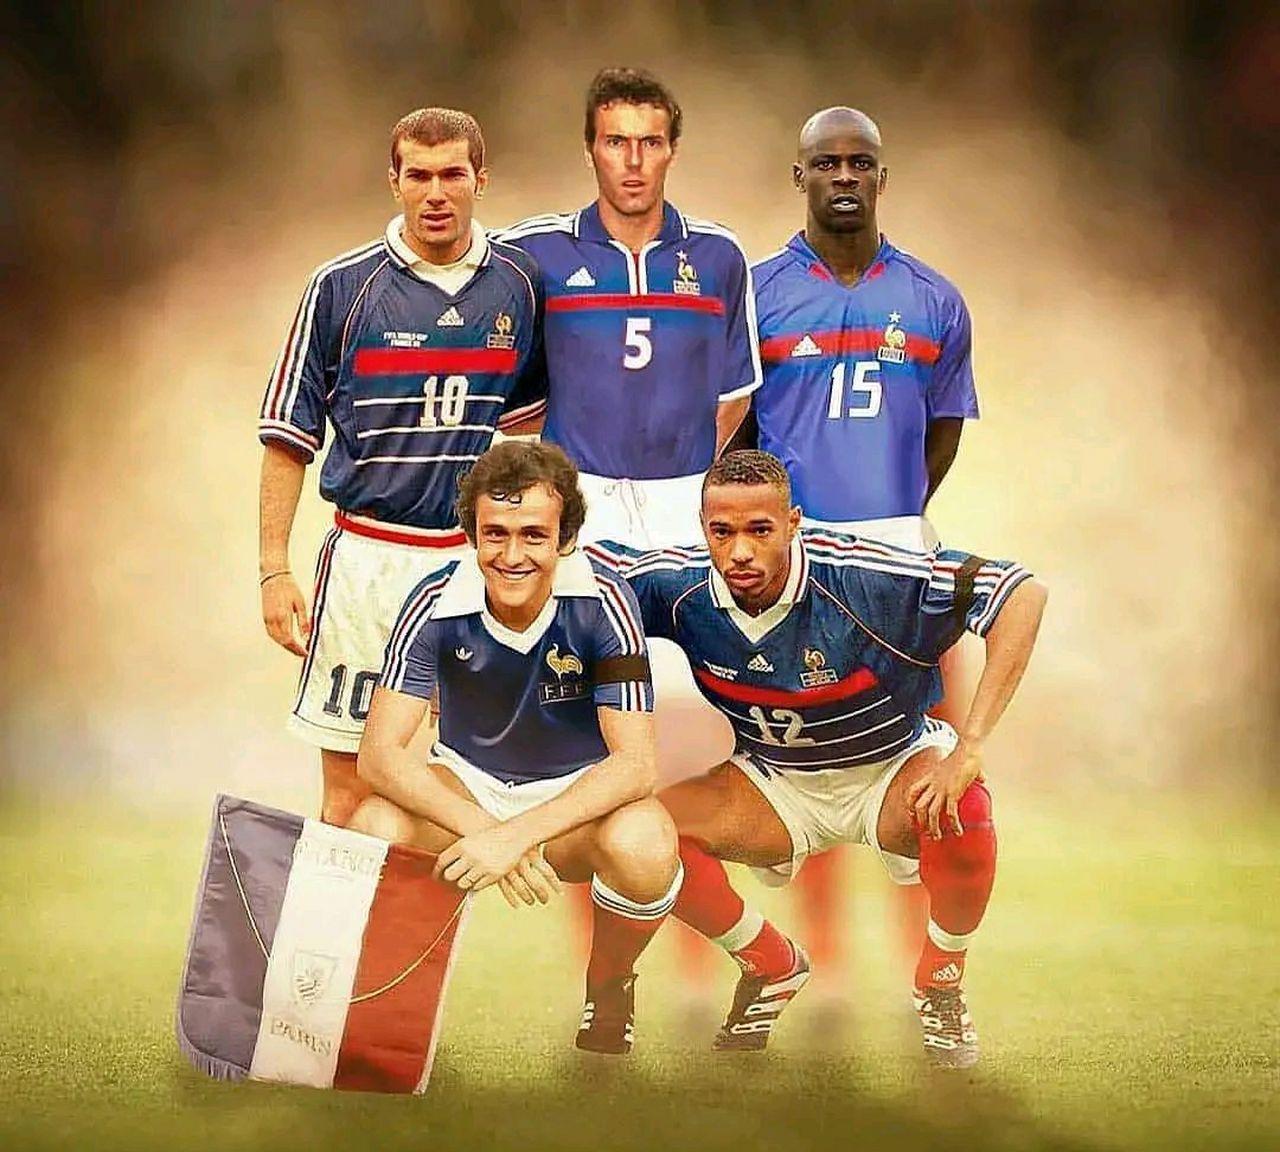 98年法国队主力阵容(1998年世界杯法国队大名单)